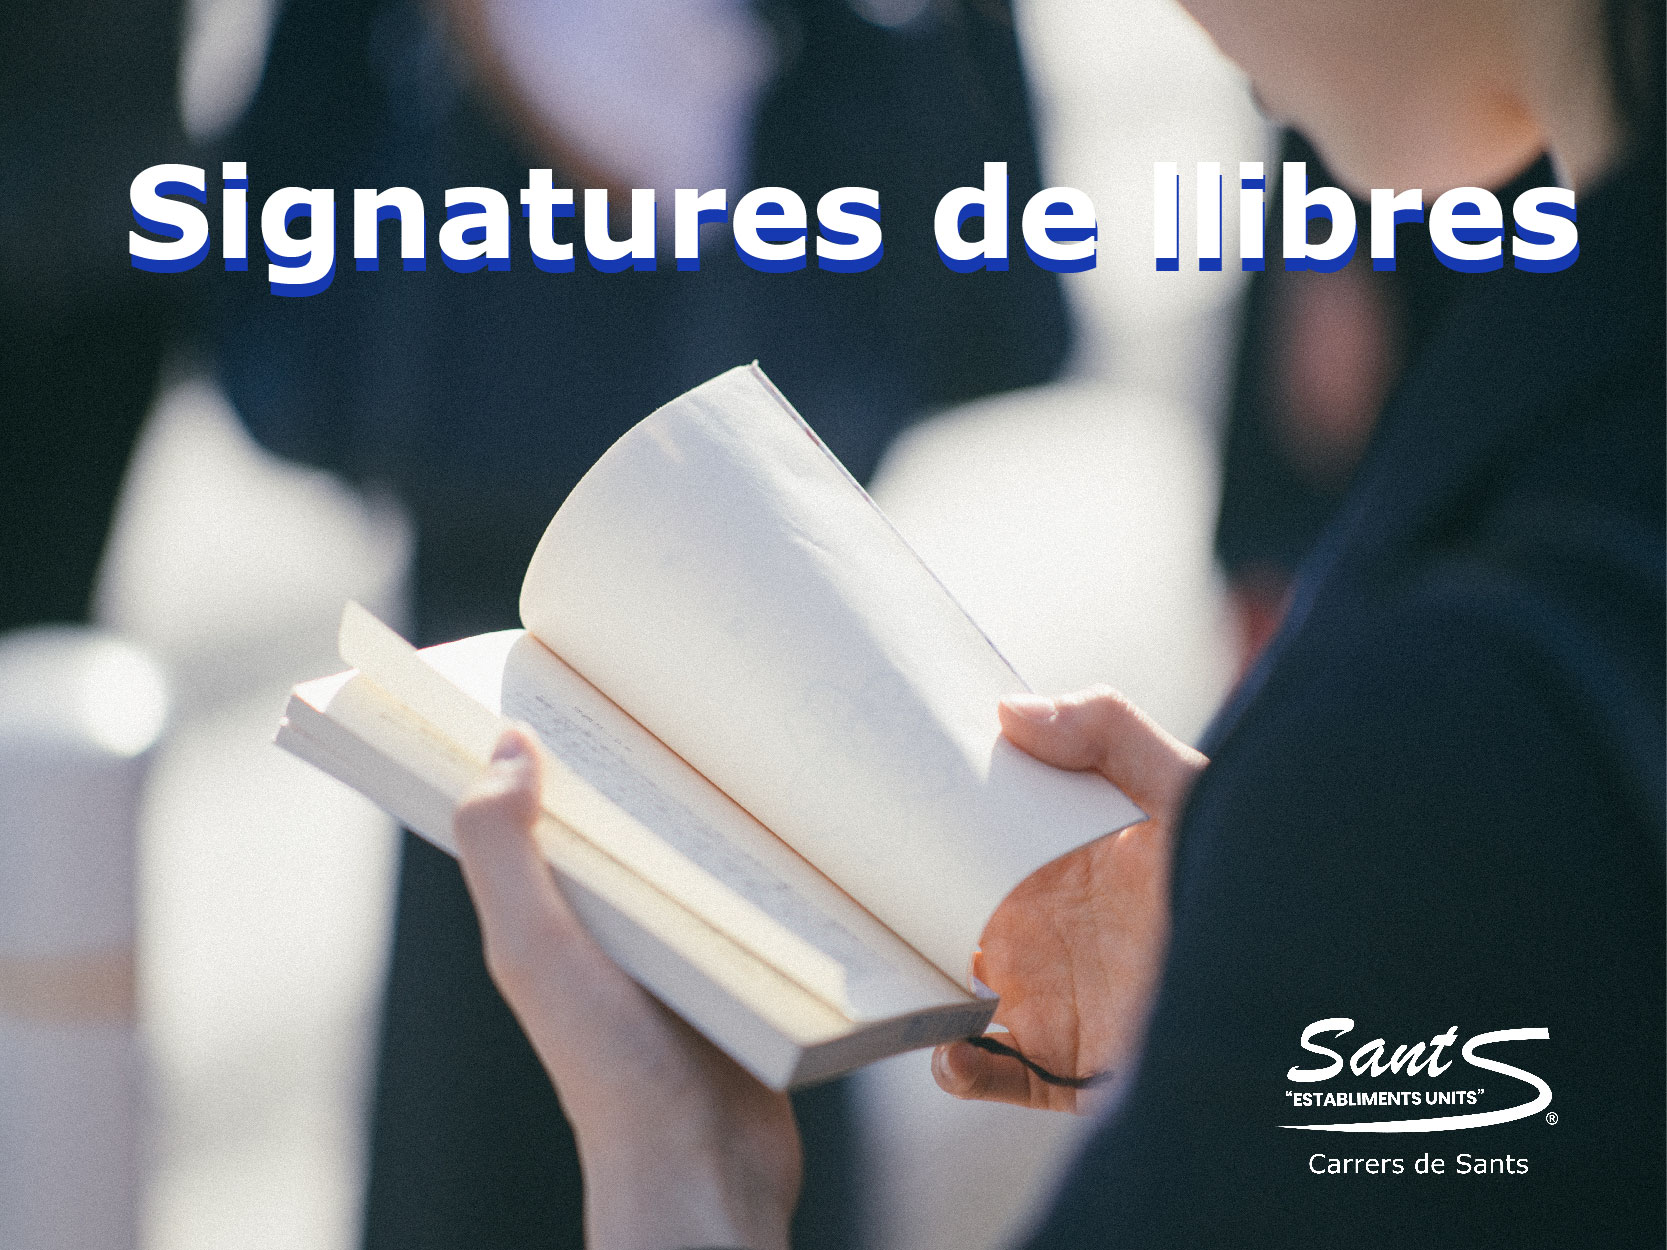 Signatures de llibres